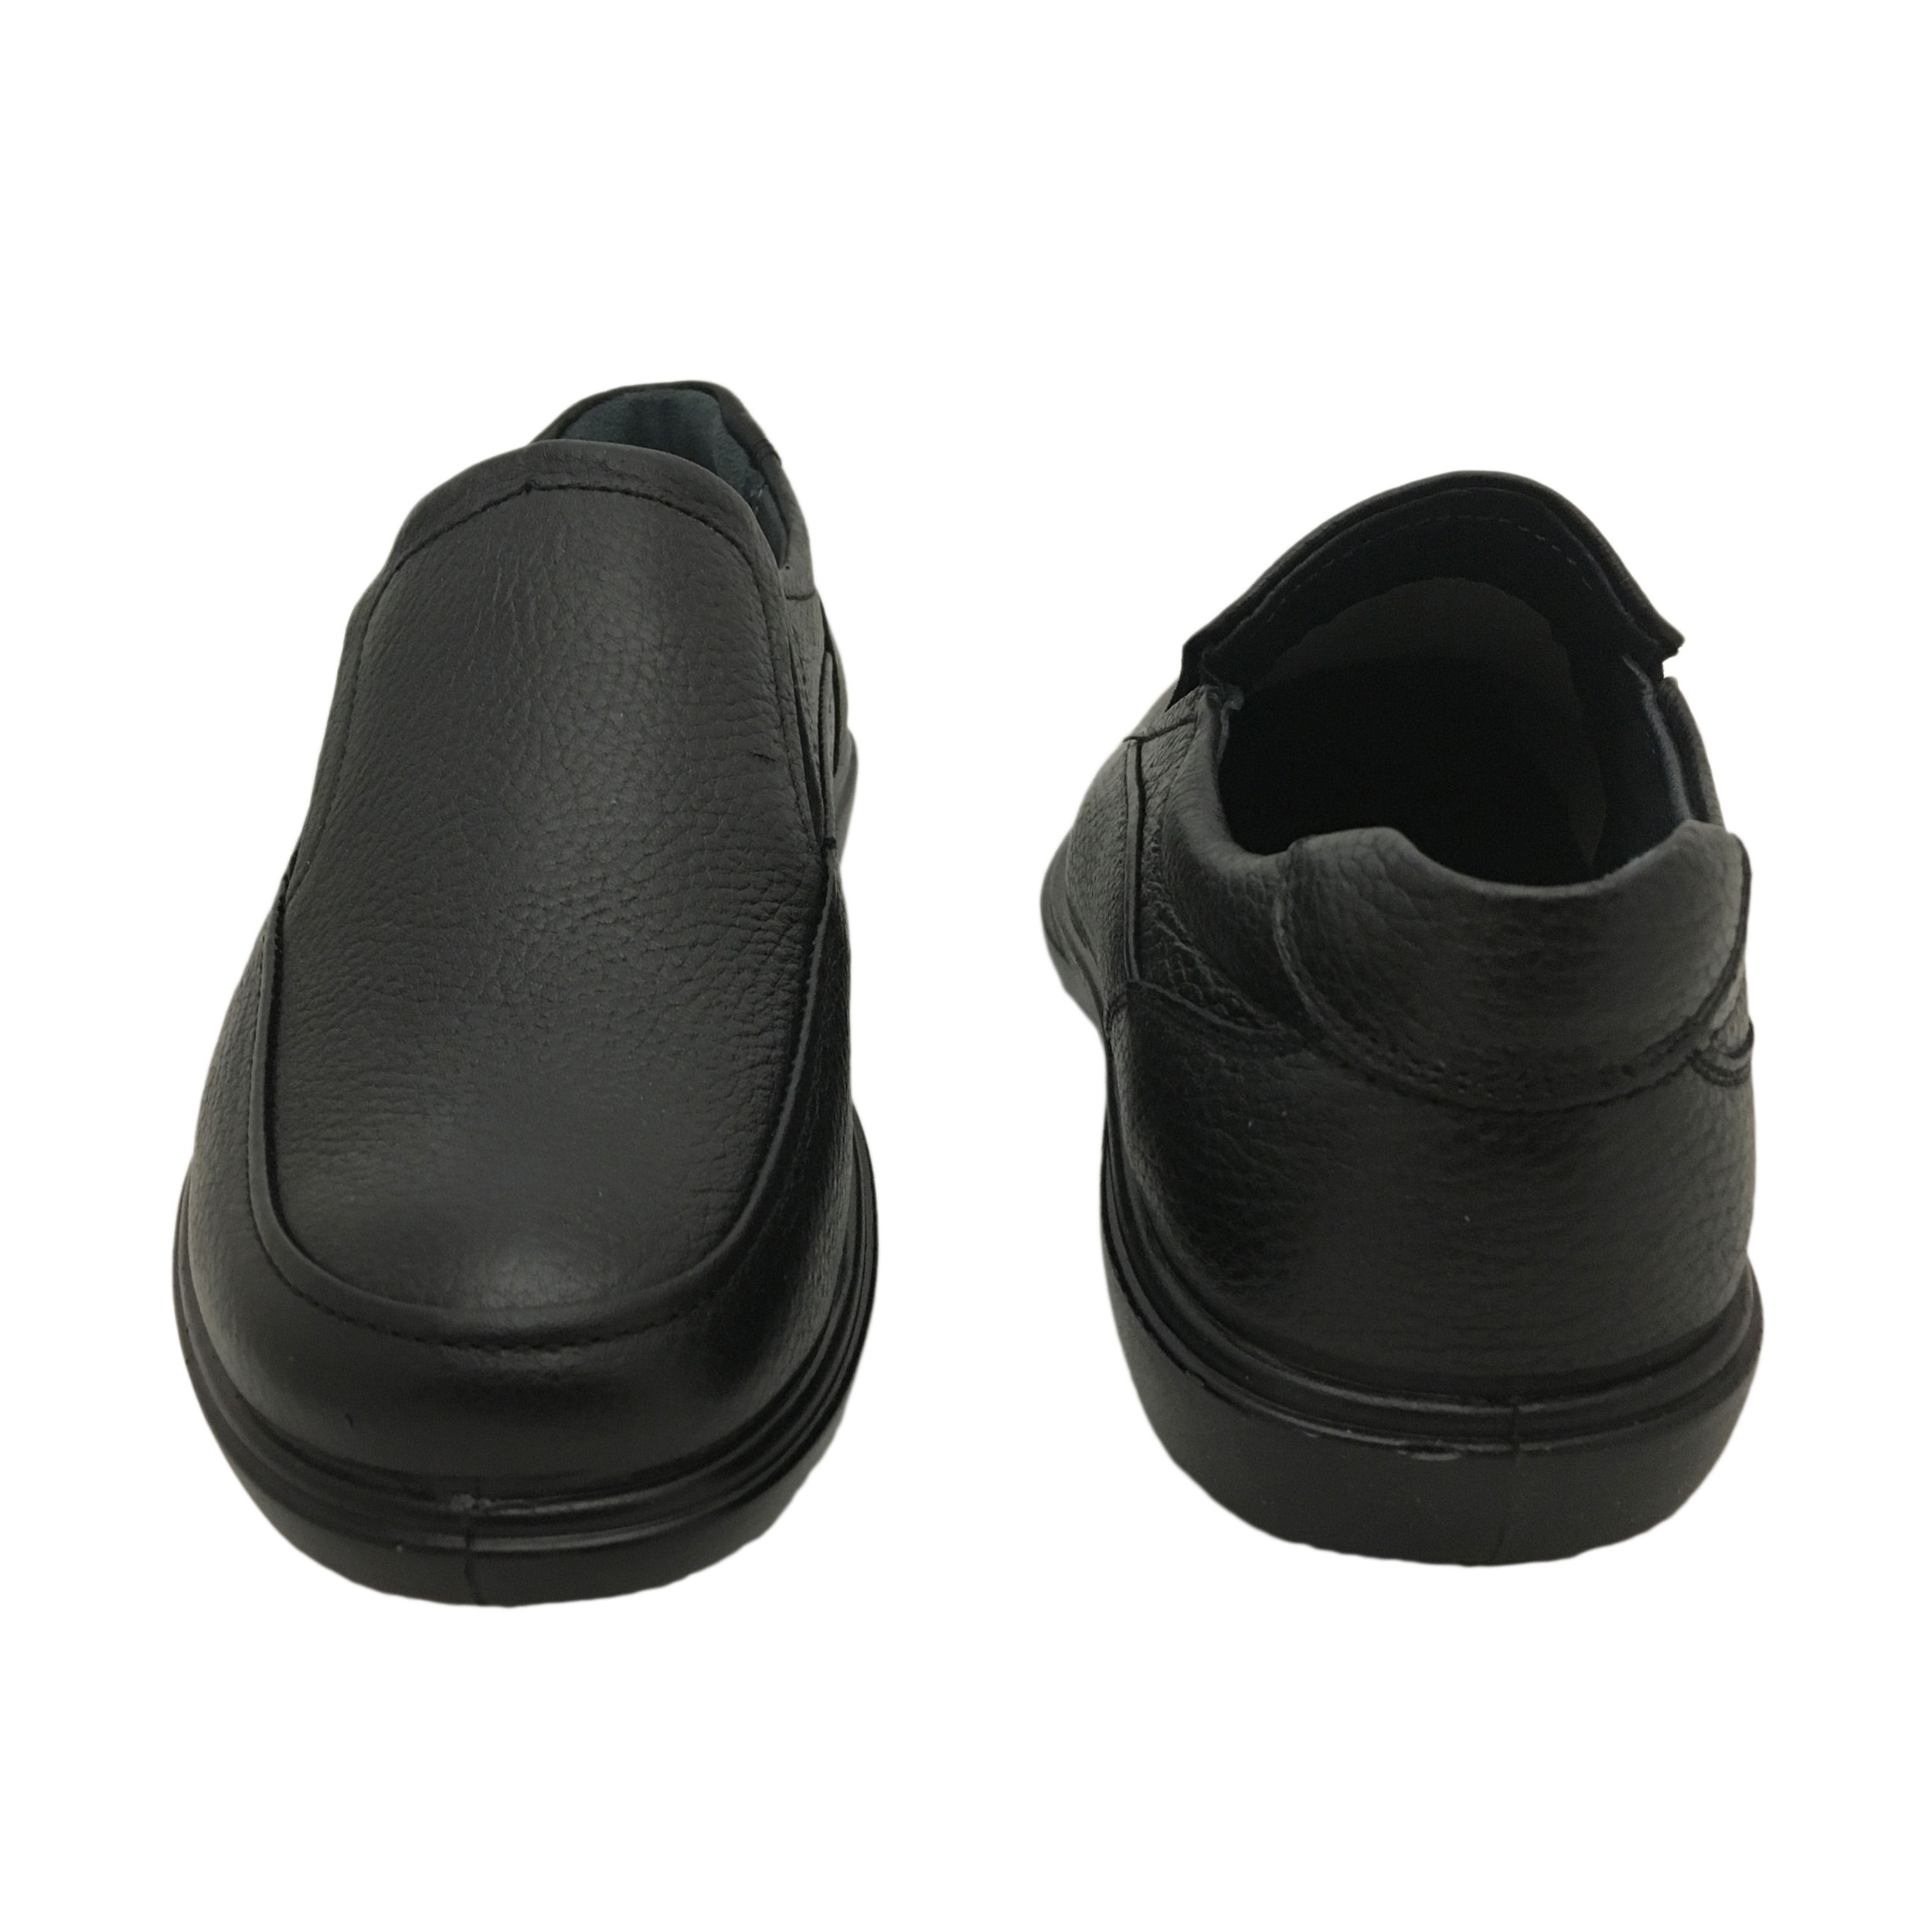 کفش روزمره مردانه شرکت کفش البرز مدل BRS کد 1149-2 -  - 4